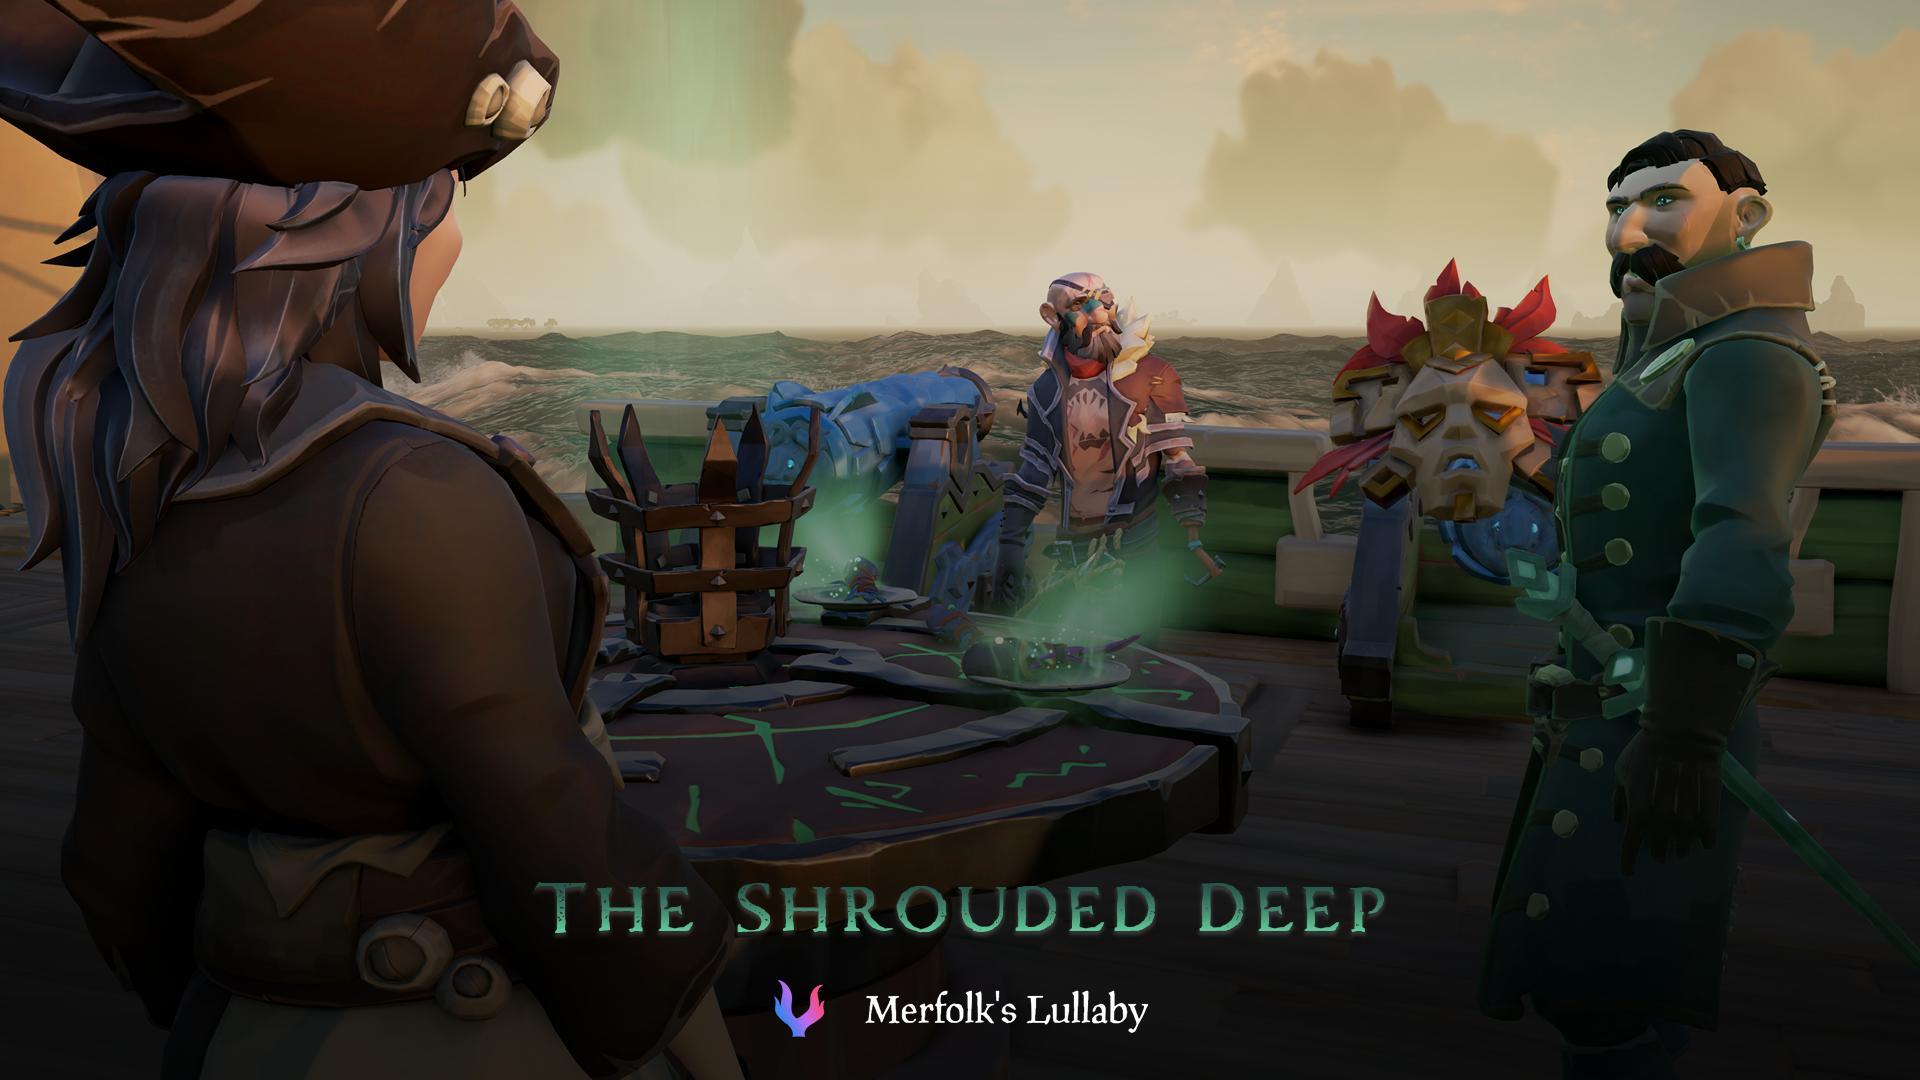 The Shrouded Deep